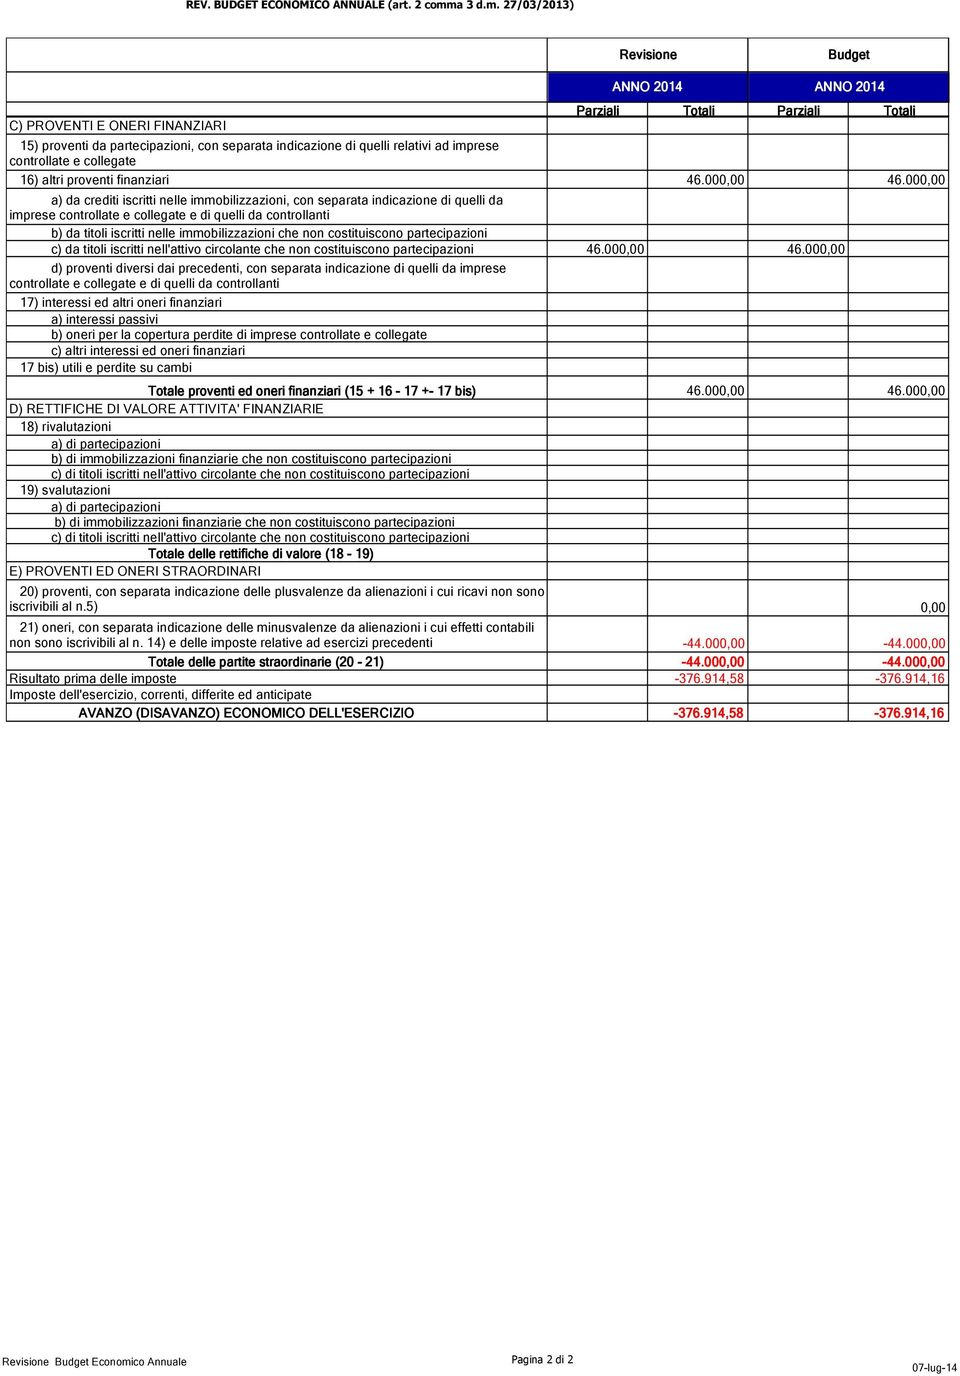 27/03/2013) Revisione Budget C) PROVENTI E ONERI FINANZIARI Parziali ANNO 2014 ANNO 2014 Totali Parziali 15) proventi da partecipazioni, con separata indicazione di quelli relativi ad imprese